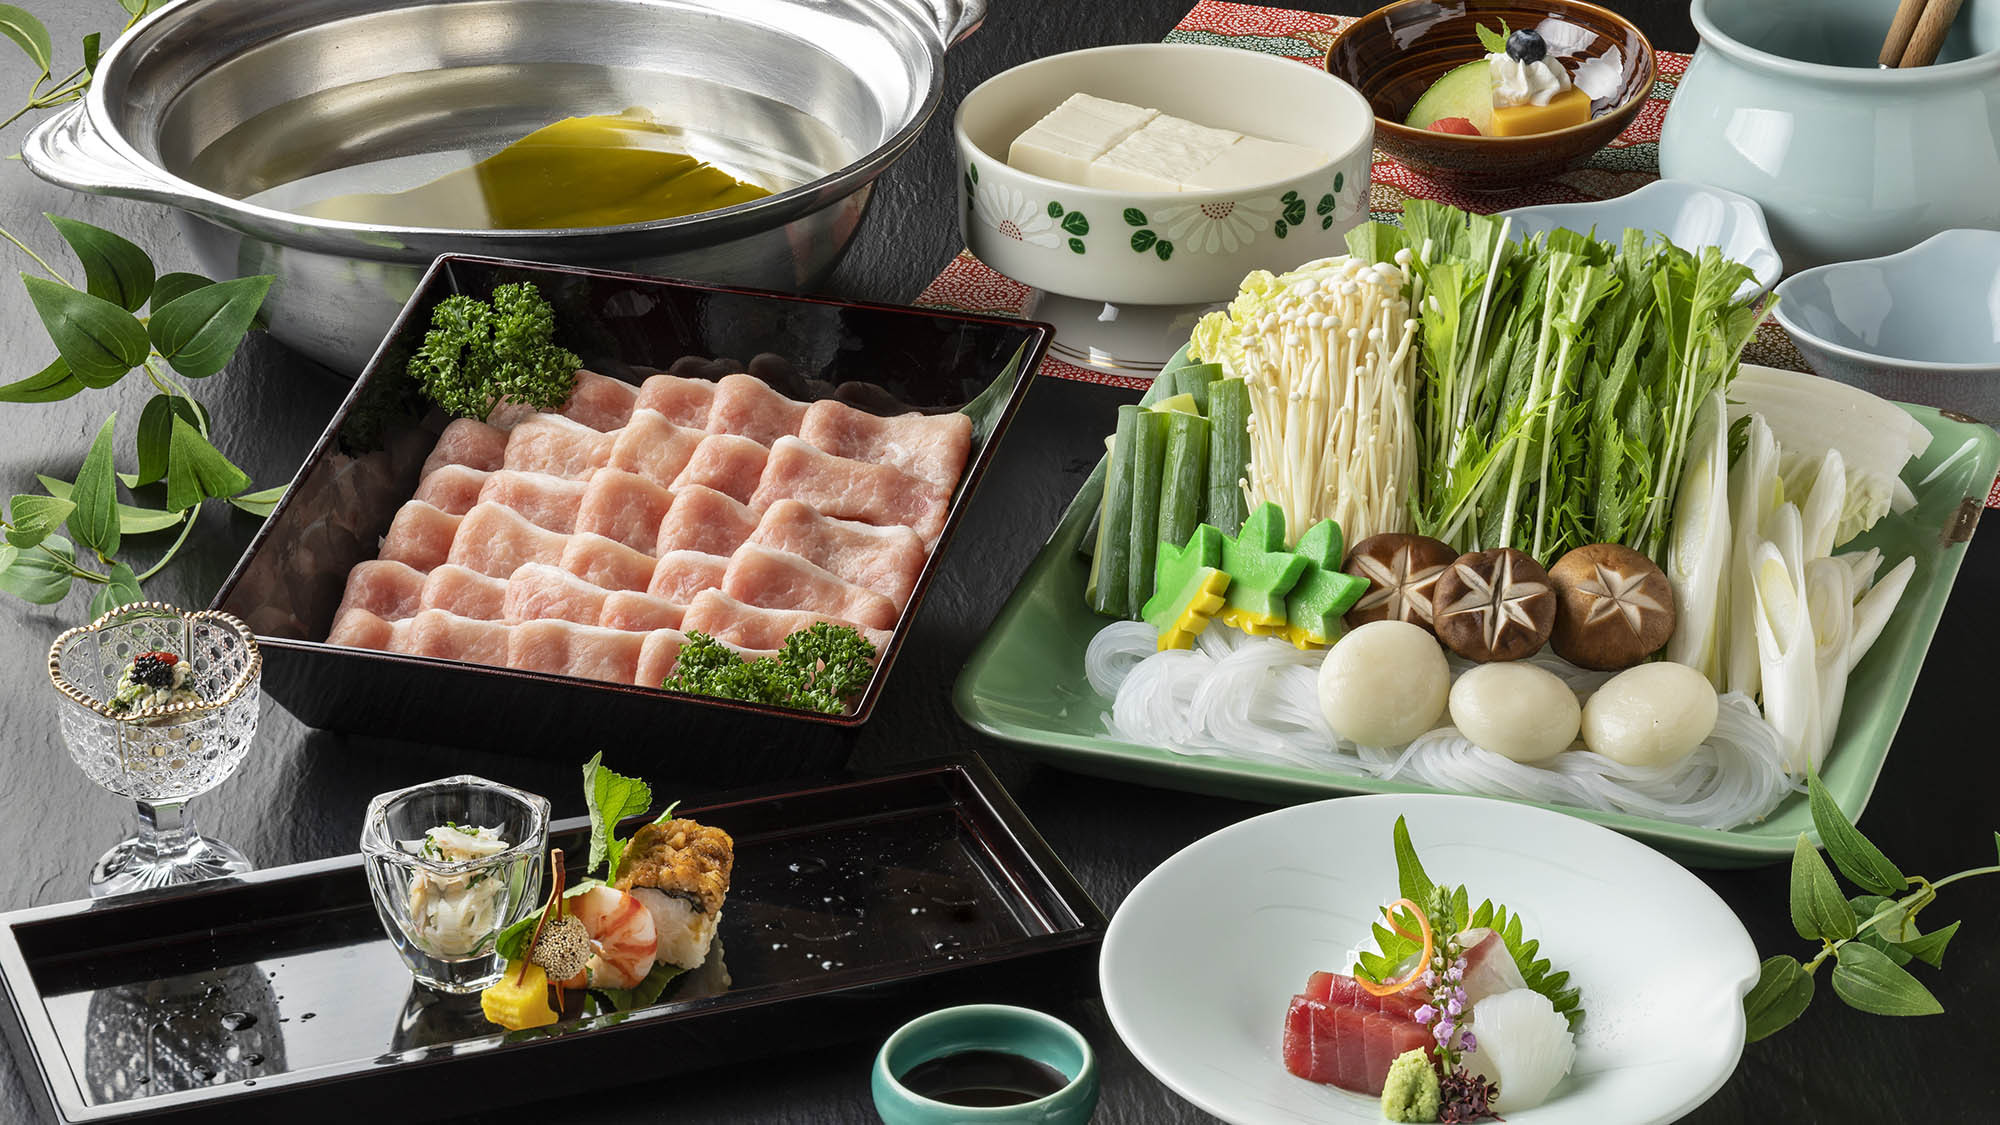 ・【丹波豚しゃぶ】甘い脂と柔らかい肉質の京丹波町産の豚肉。しゃぶしゃぶでお召し上がりください